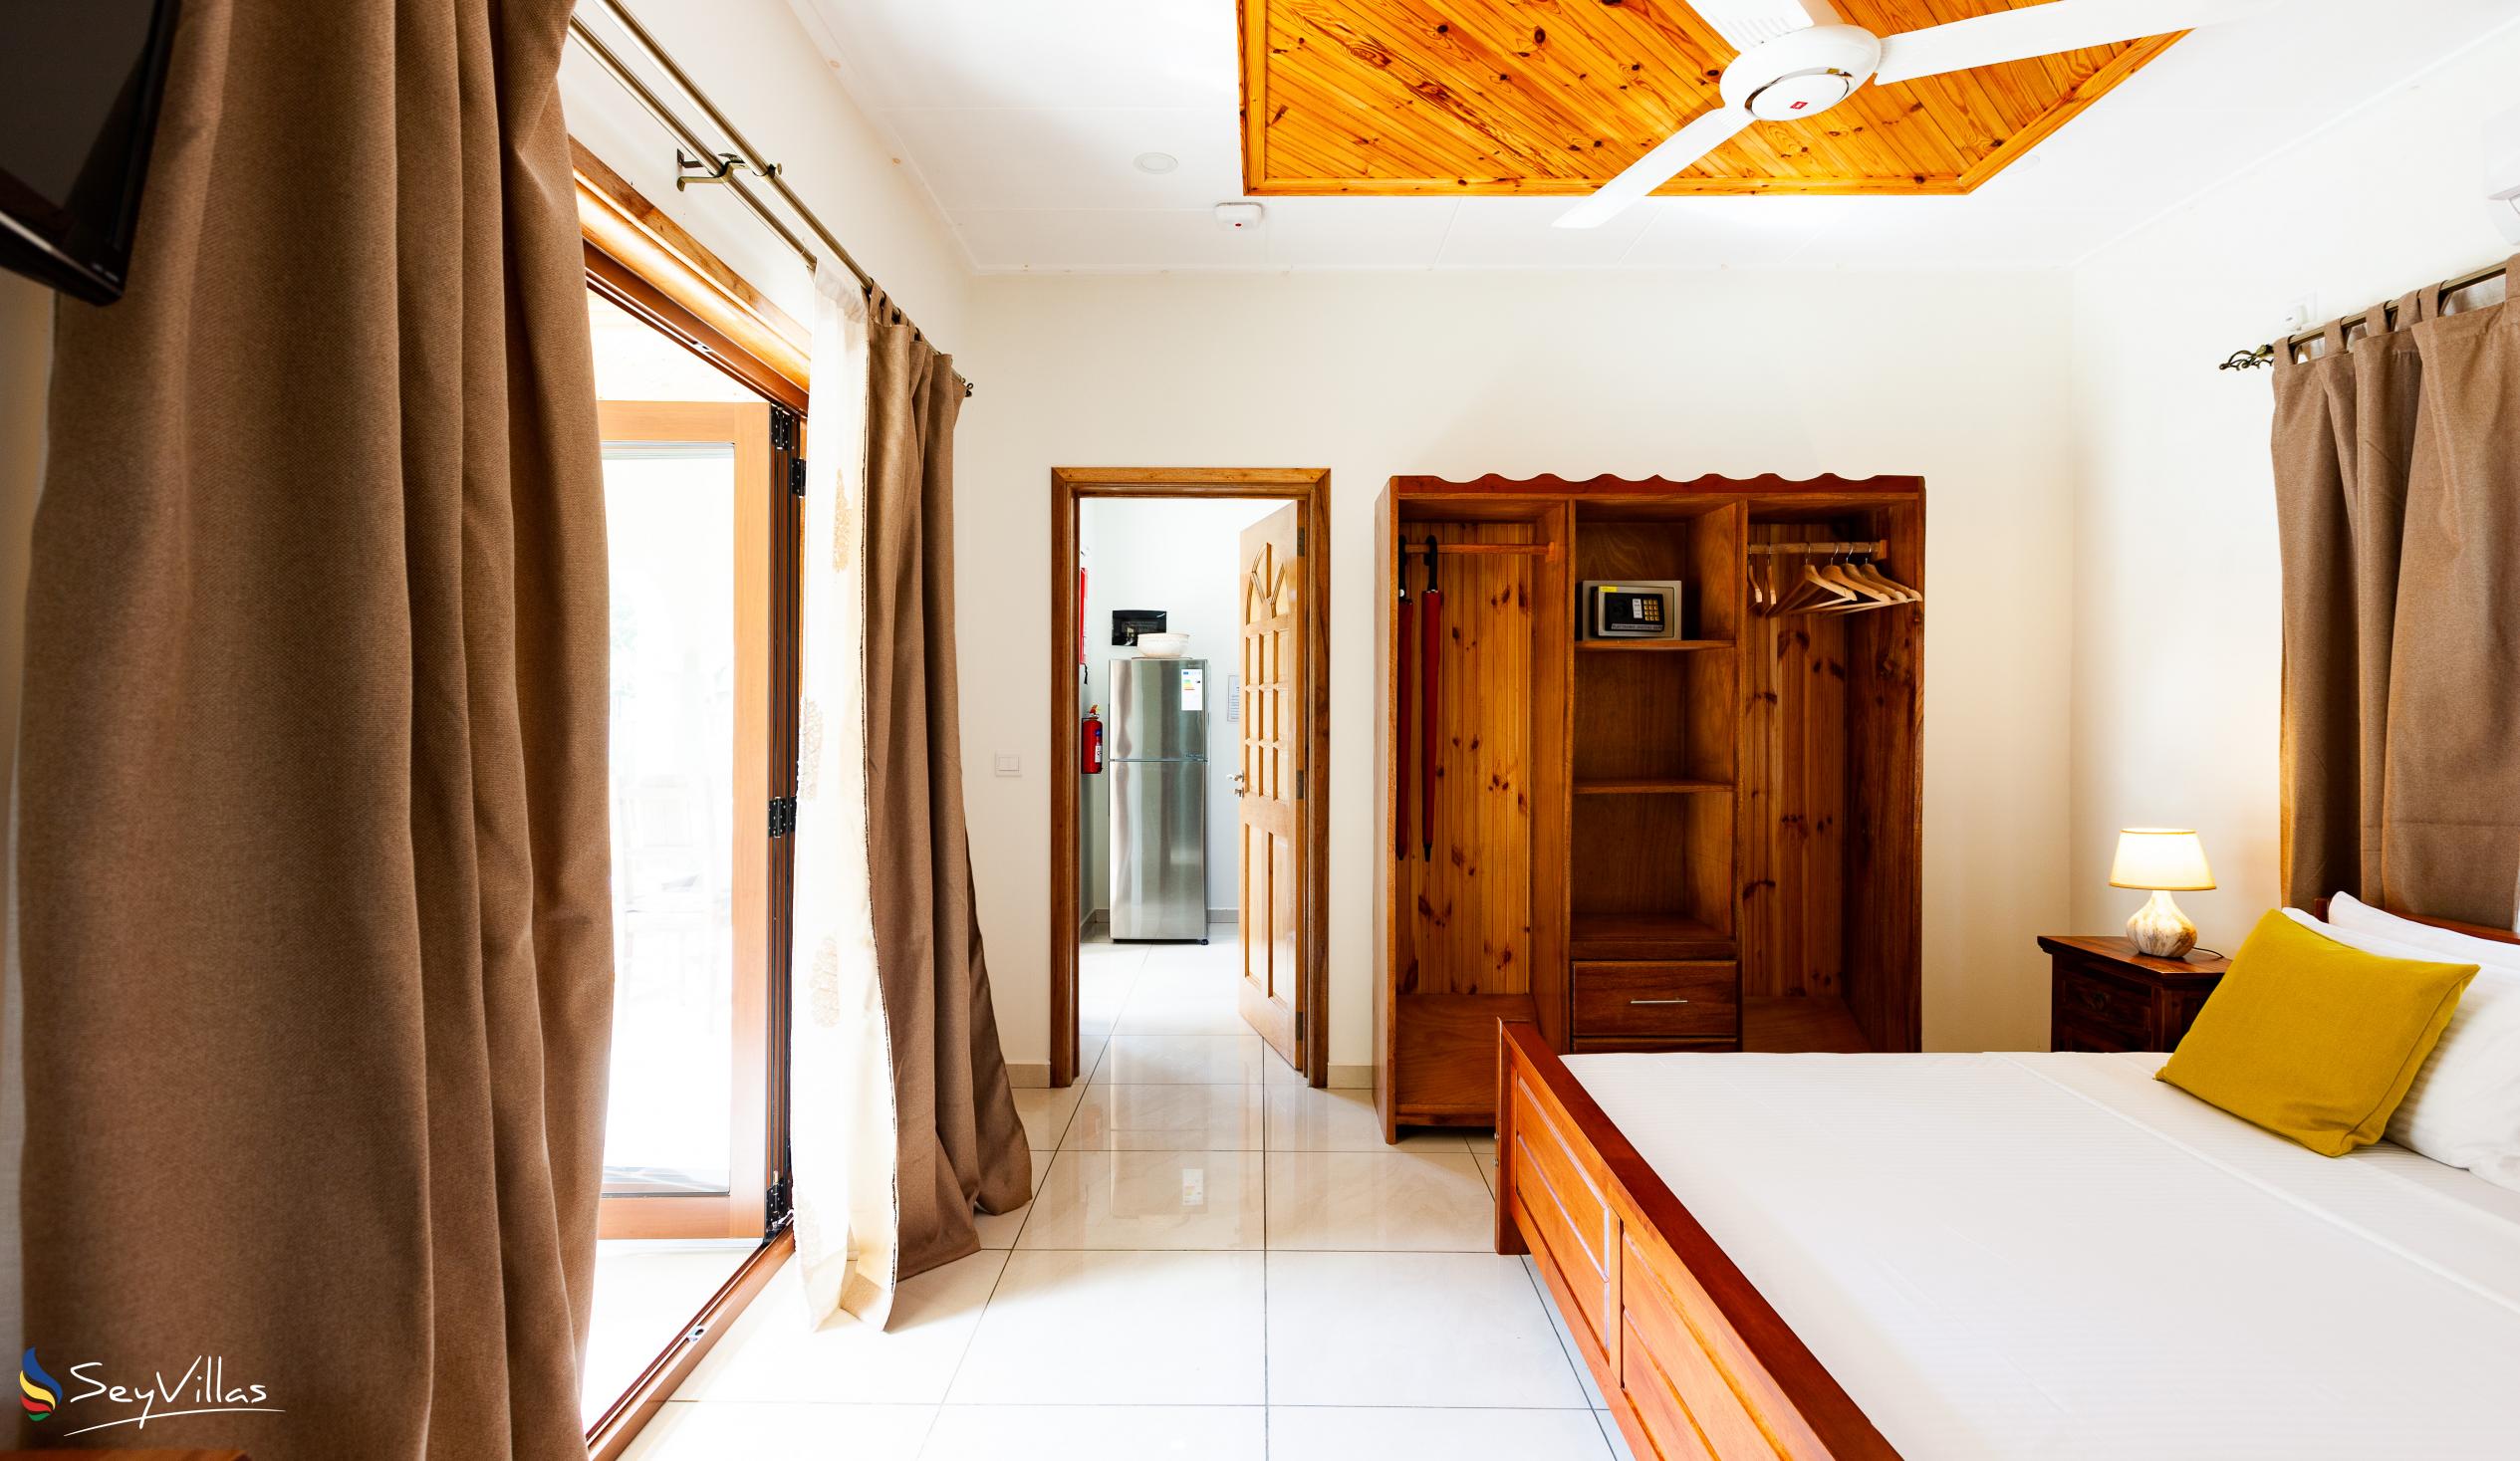 Foto 22: Maison Ed-Elle - Appartamento con 1 camera - La Digue (Seychelles)